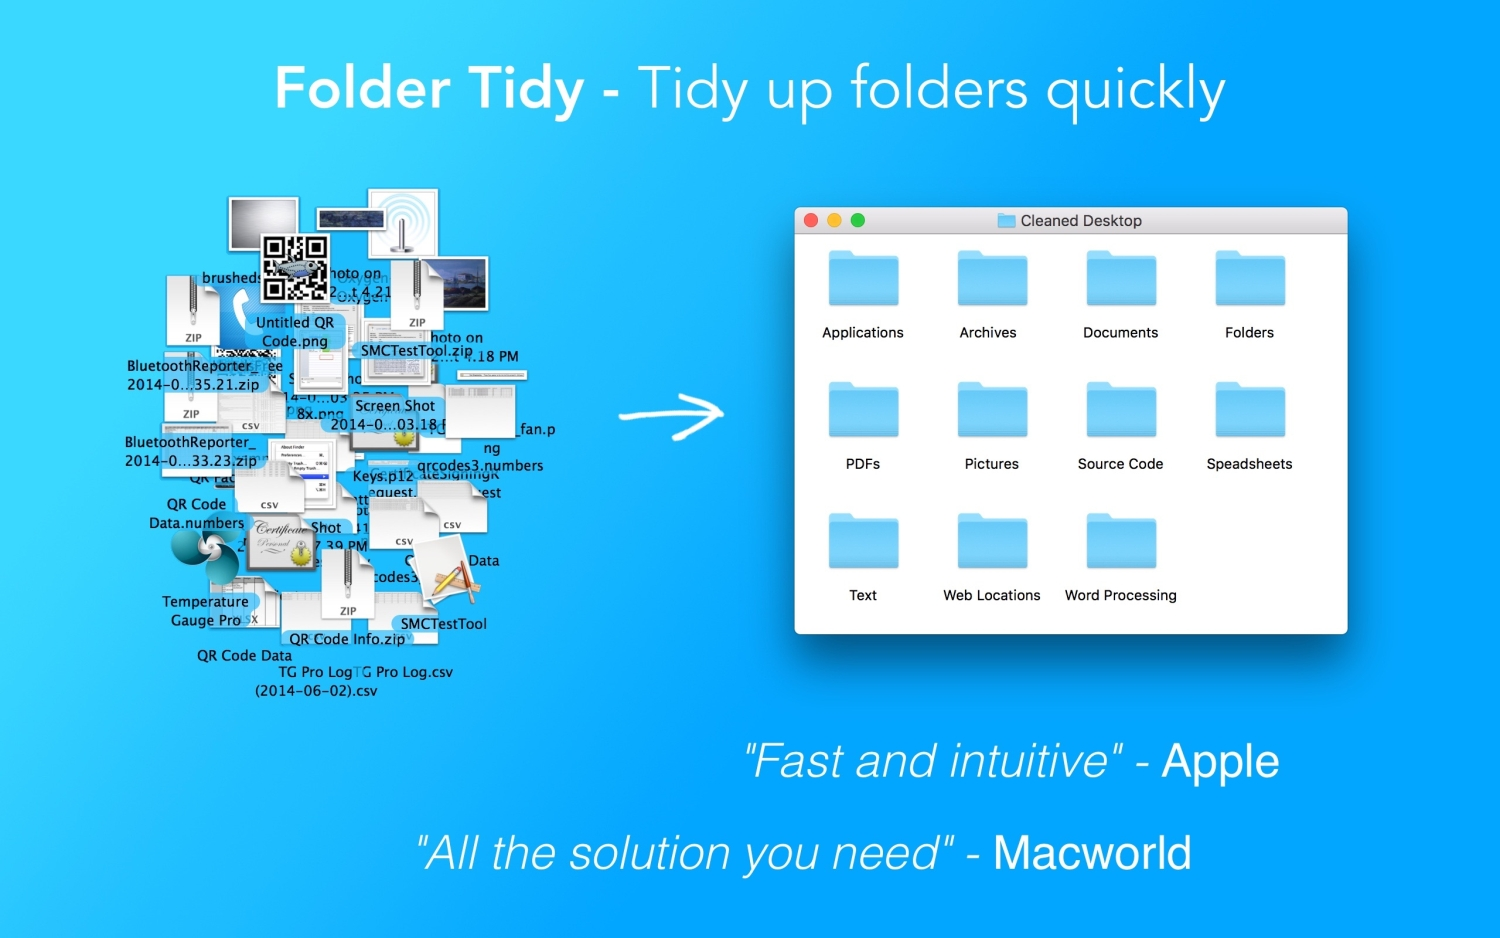 Uma imagem promocional para o Folder Tidy Mac mostrando suas capacidades.